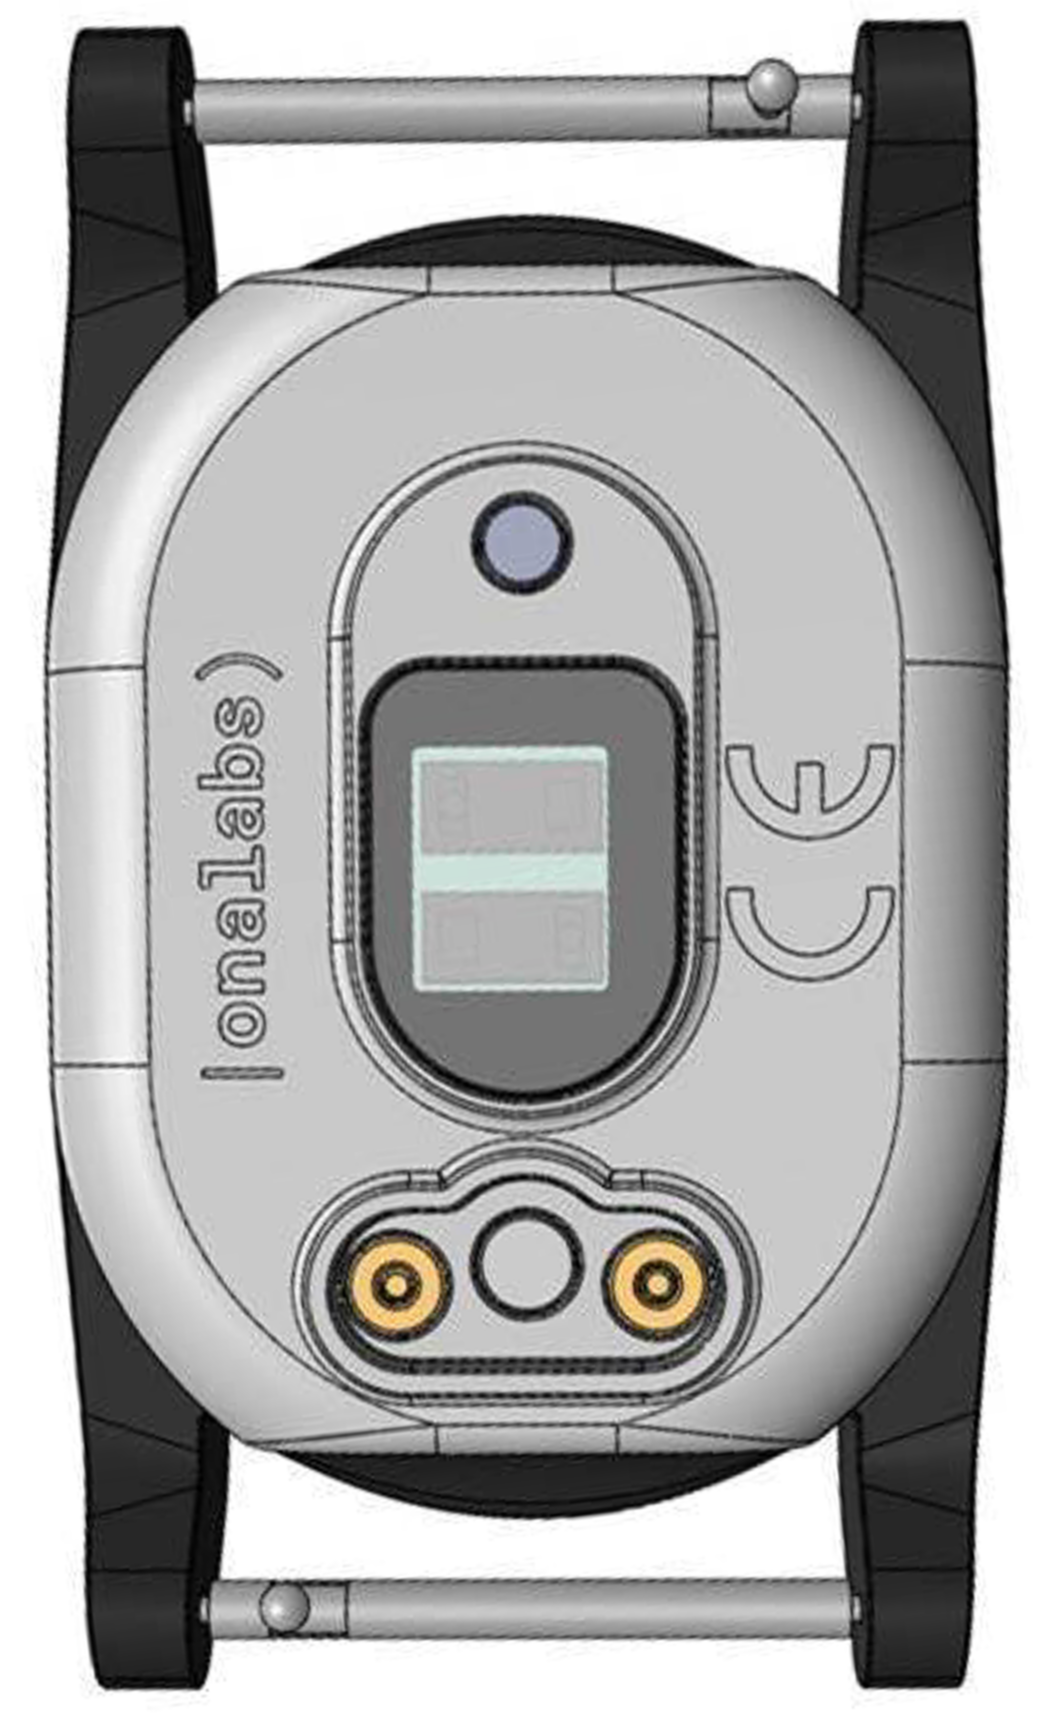 OnaVital; pols-huid-sensor voor 24/7 gezondheid-monitoring (onder andere bloeddruk) en patiëntenbewaking op afstand.